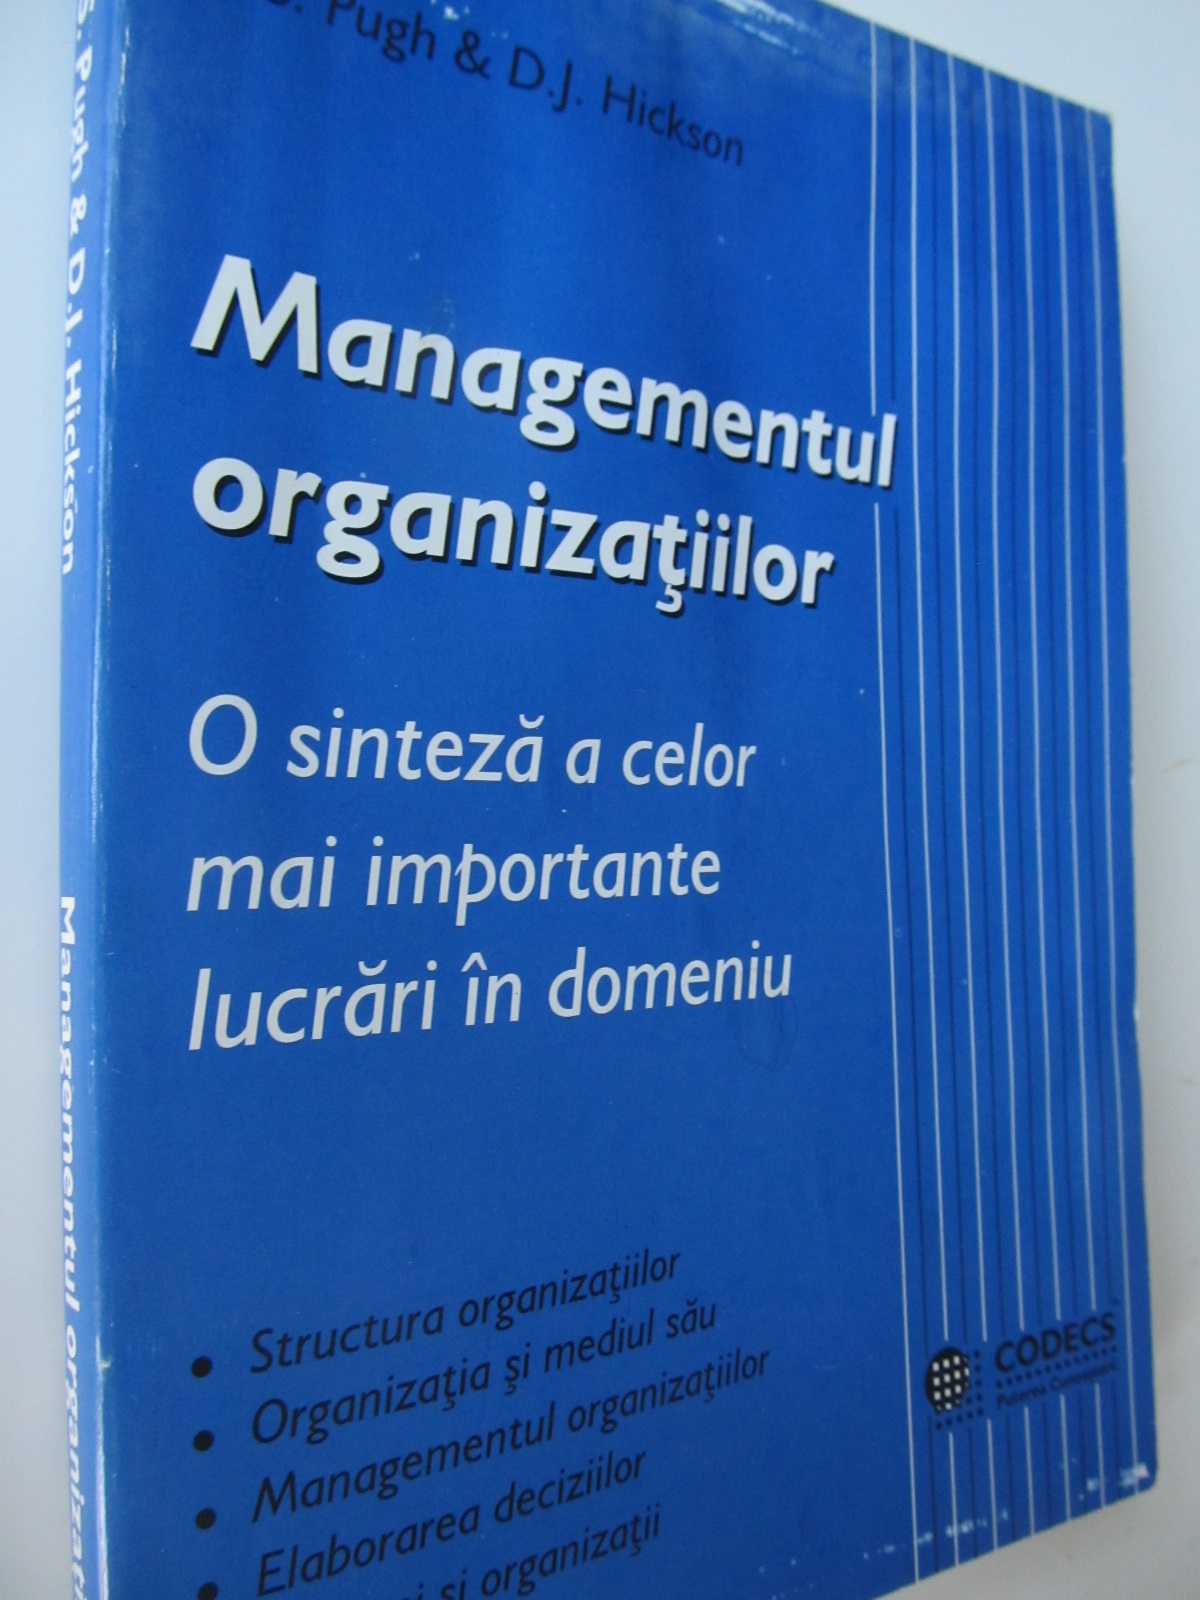 Managementul organizatiilor. O sinteza a celor mai importante lucrari in domeniu - D. S. Pugh , D. J. Hickson | Detalii carte